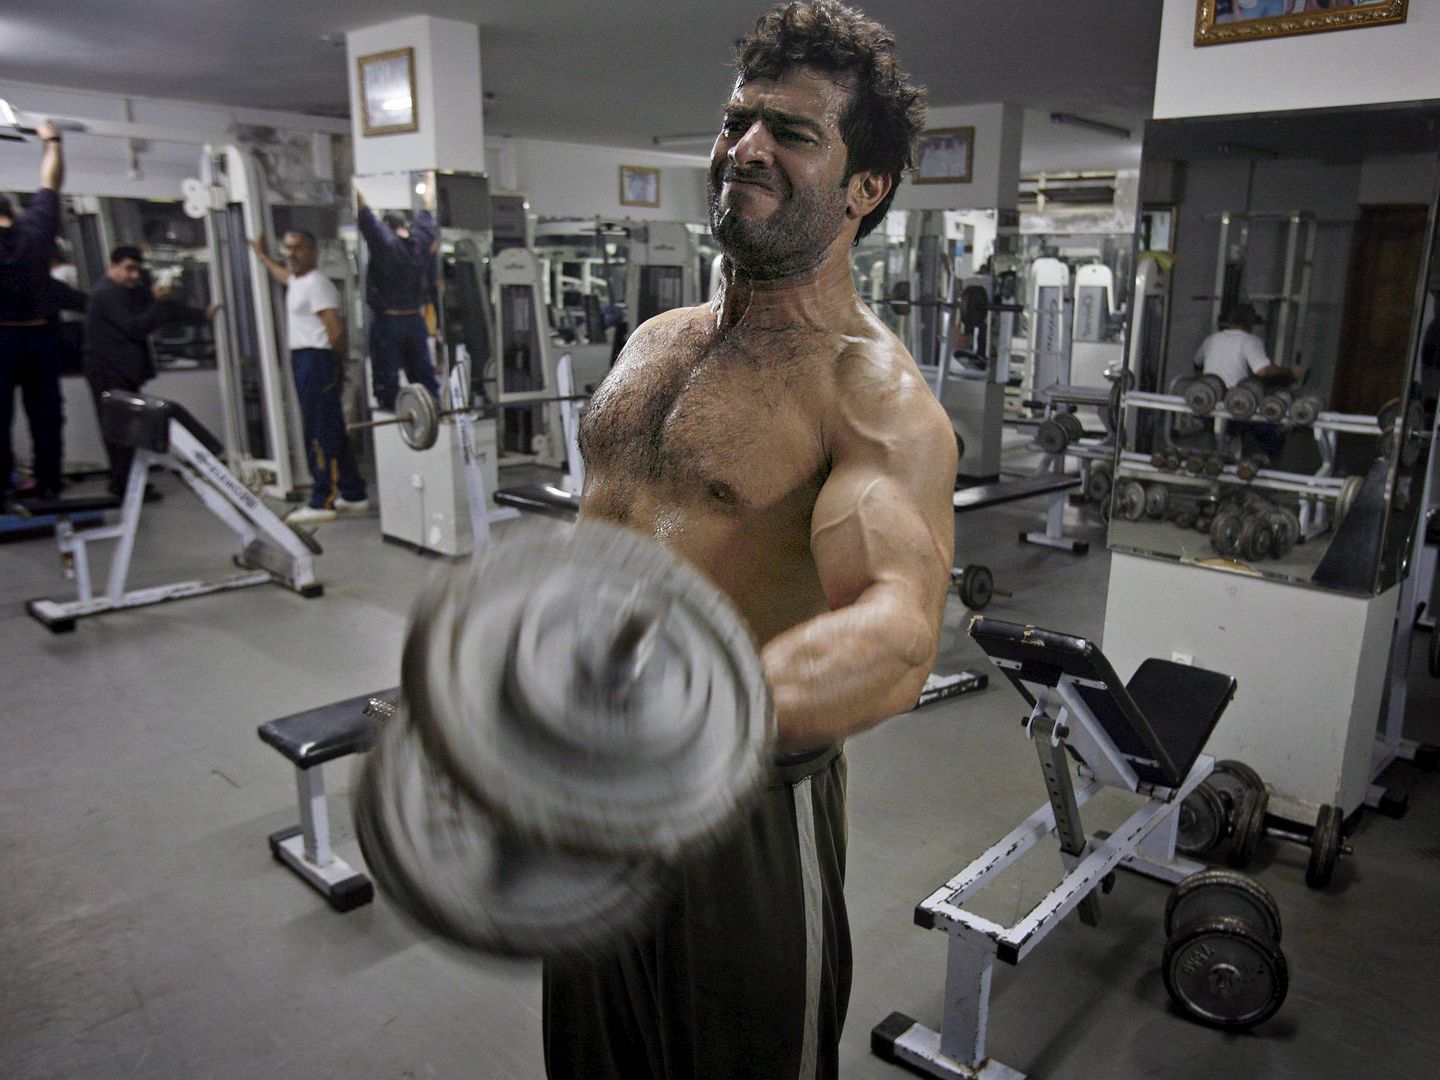 Un hombre levanta pesas en un gimnasio. Foto: EFE/Ali Ali